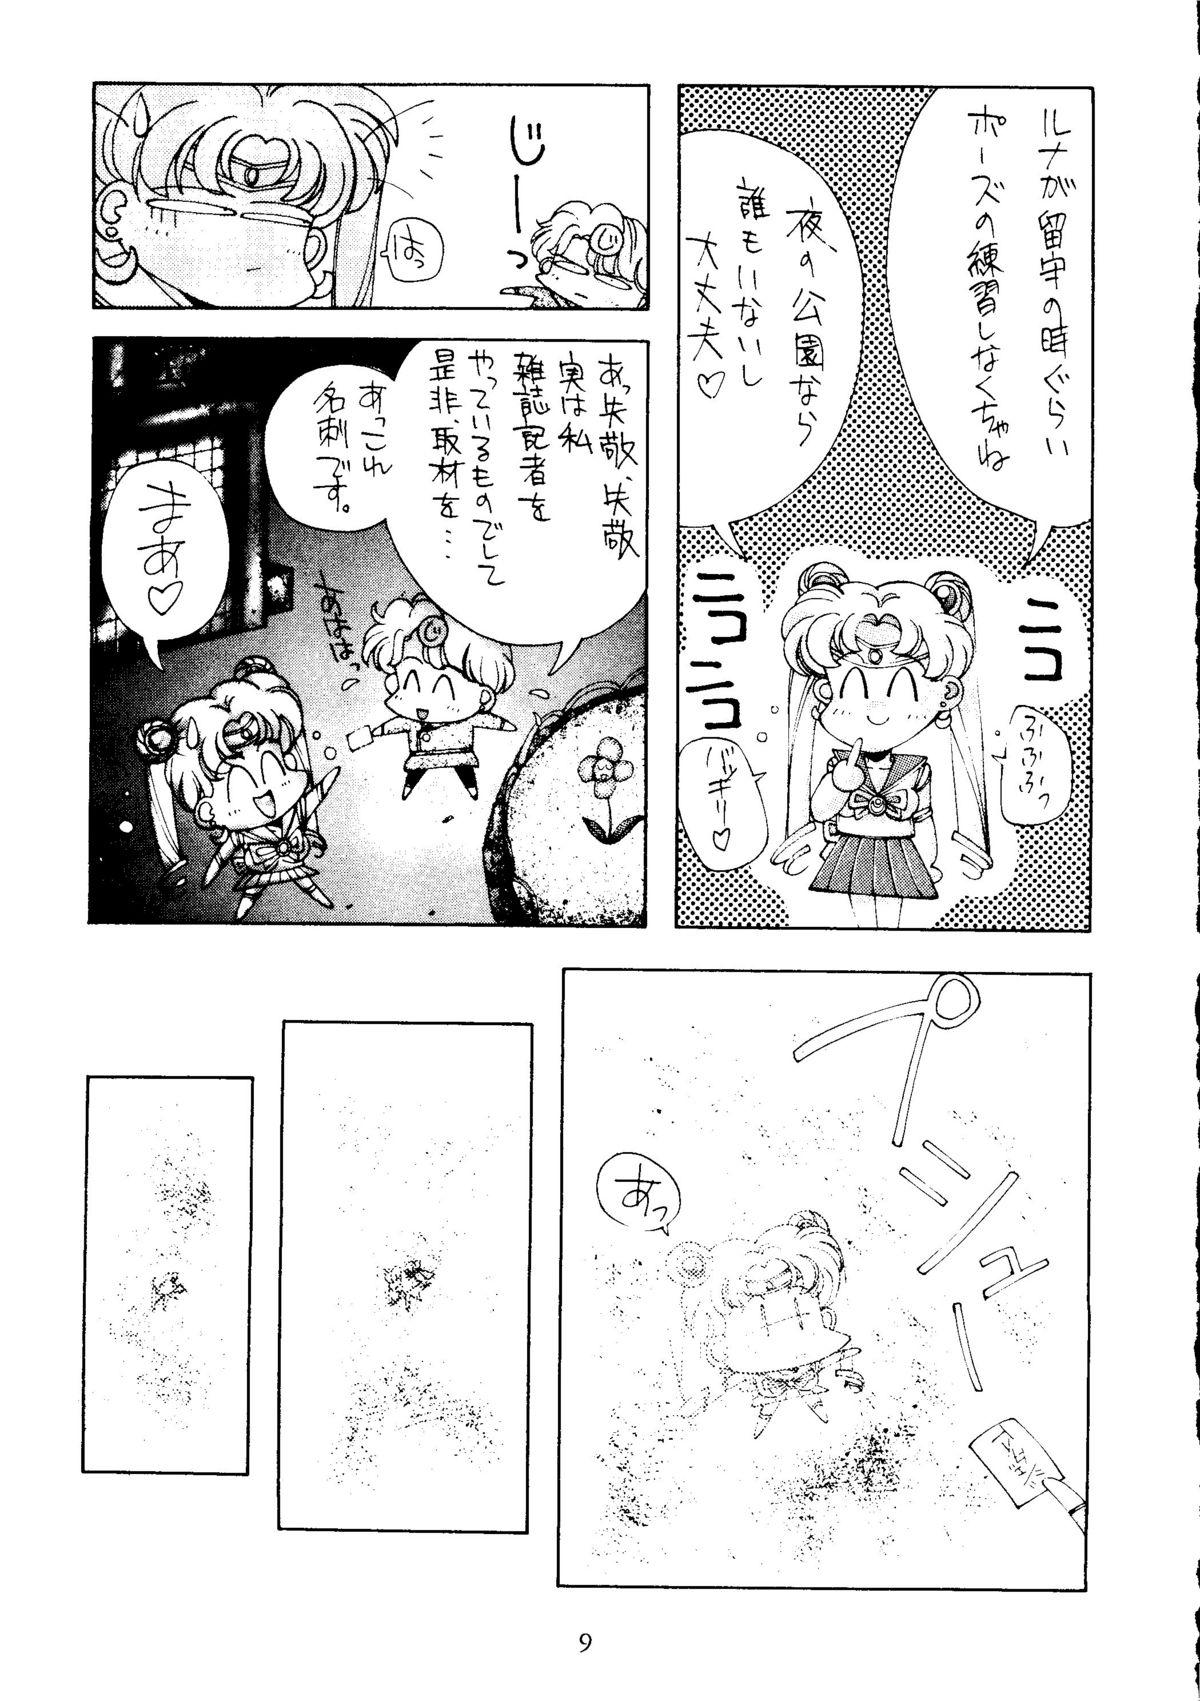 Sexo Anal Sailor Moon Mate Vol. 1 - Sailor moon Buceta - Page 8